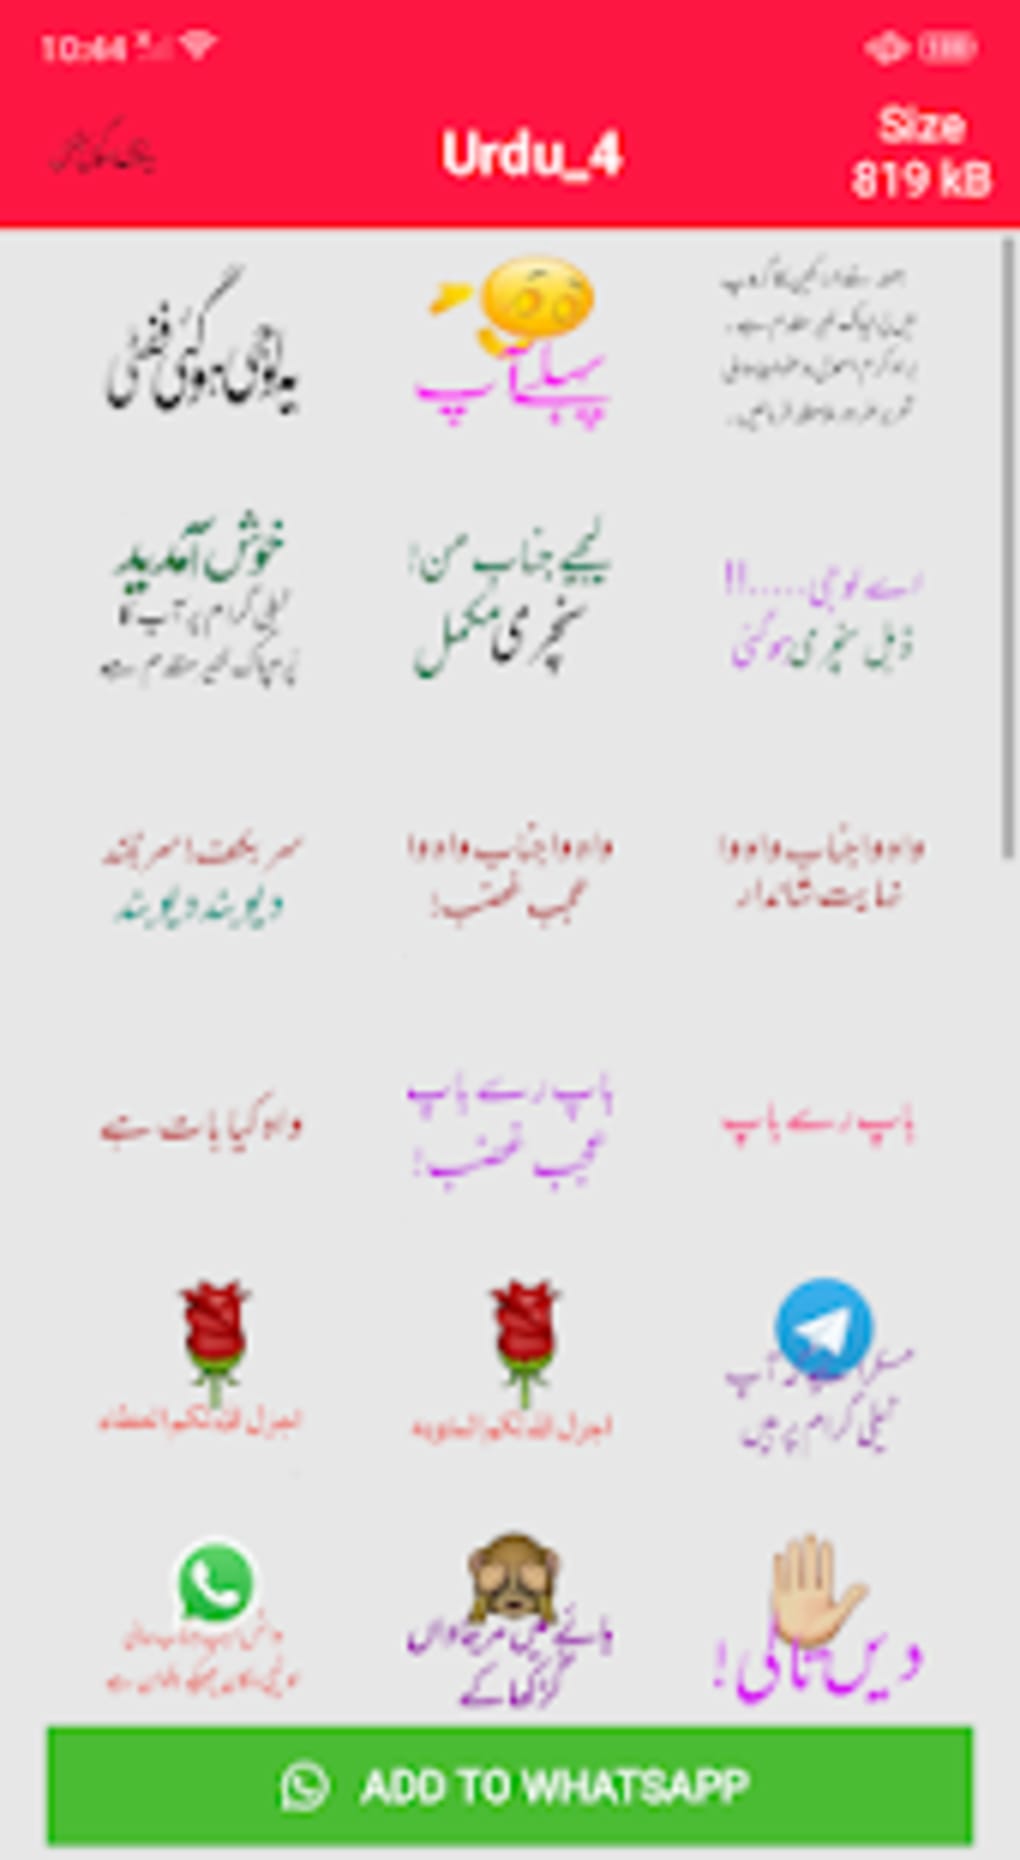 Free urdu stickers whatsapp